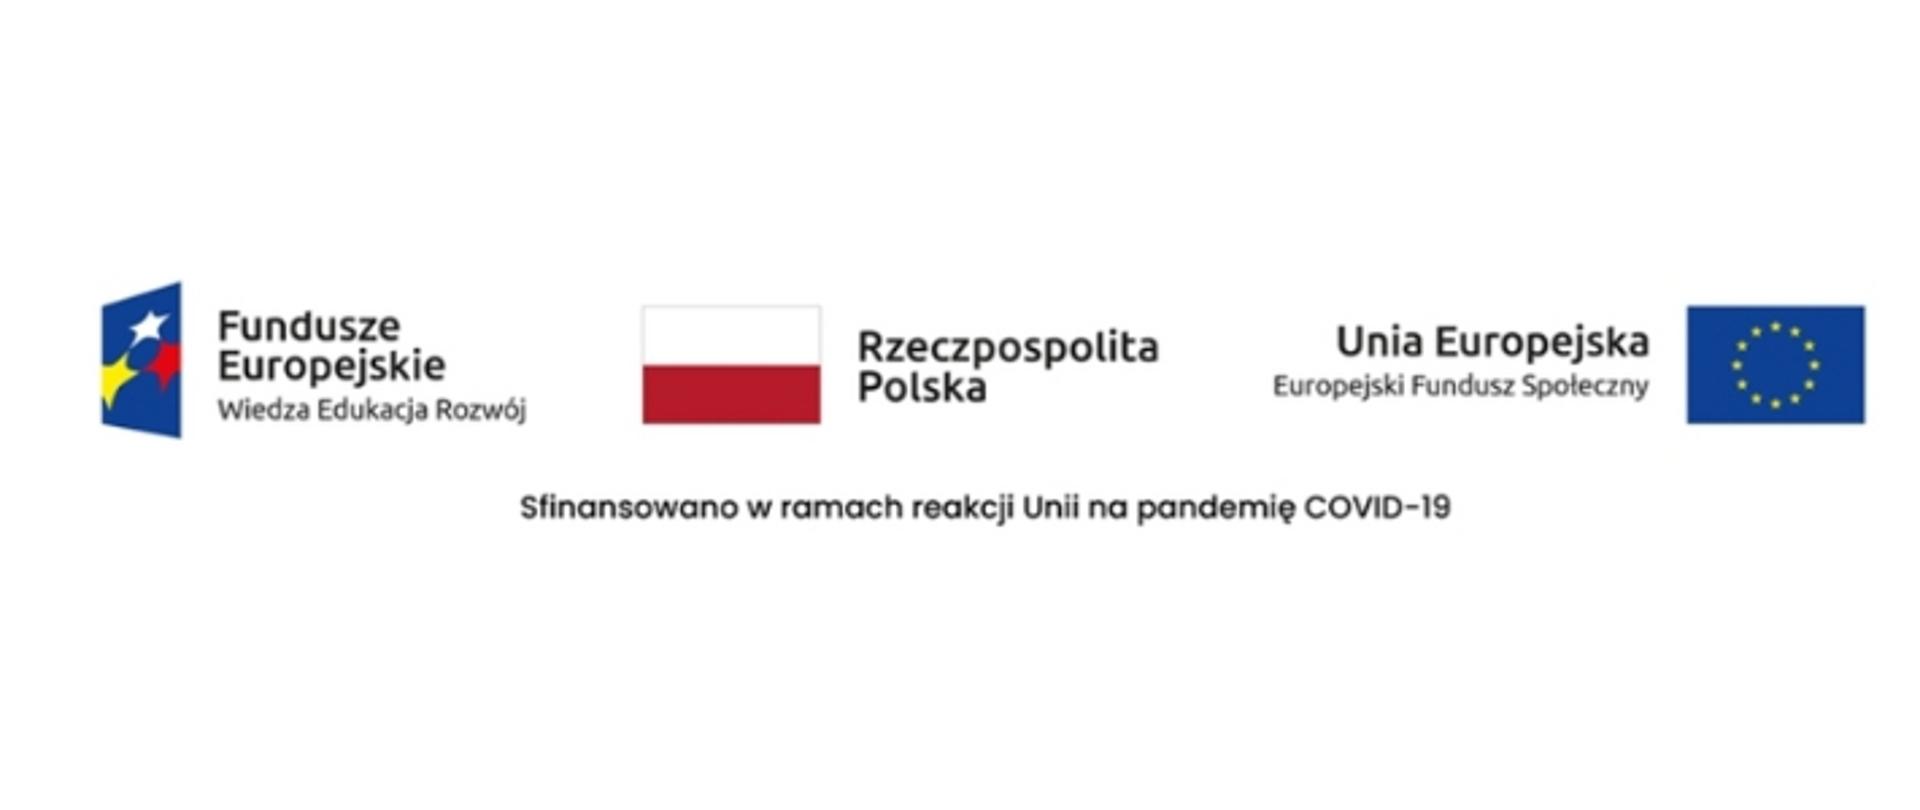 Powiatowa Stacja Sanitarno-Epidemiologiczna w Mrągowie jest beneficjentem projektu pn. „Wzmocnienie nadzoru sanitarno-epidemiologicznego Polski” realizowanego w ramach Działania 7.1 Oś priorytetowa VII Wsparcie REACT-EU dla obszaru zdrowia Programu Operacyjnego Wiedza Edukacja Rozwój 2014-2020 współfinansowanego ze środków Europejskiego Funduszu Społecznego w ramach reakcji Unii na pandemię COVID-19.